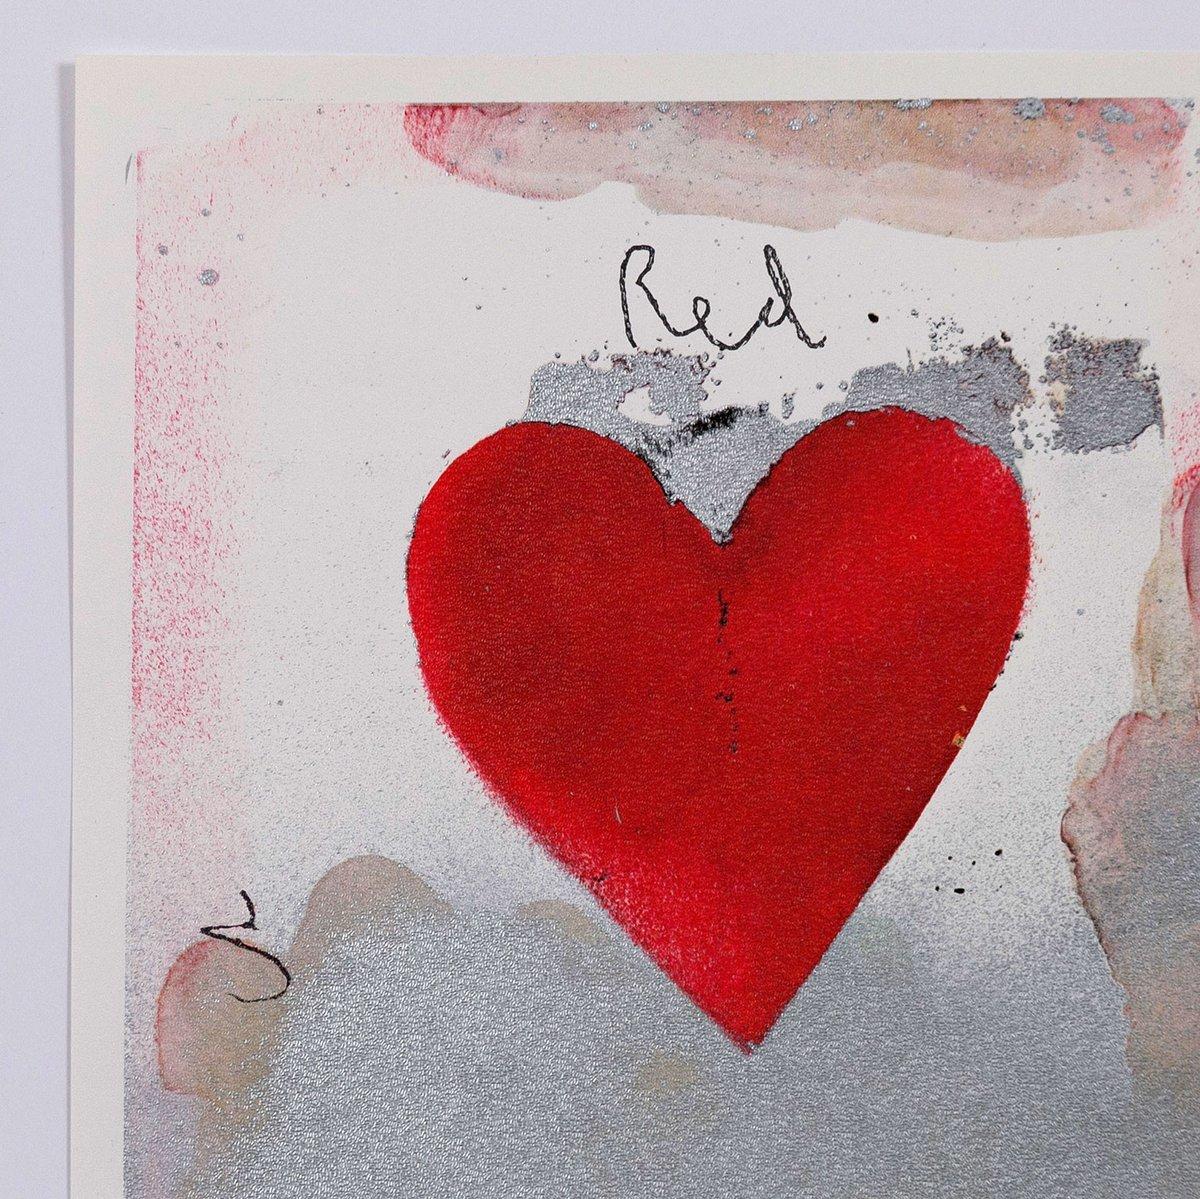 8 Hearts / Look, lithographie off-set avec superposition de collages de papier métallique, 1970 1